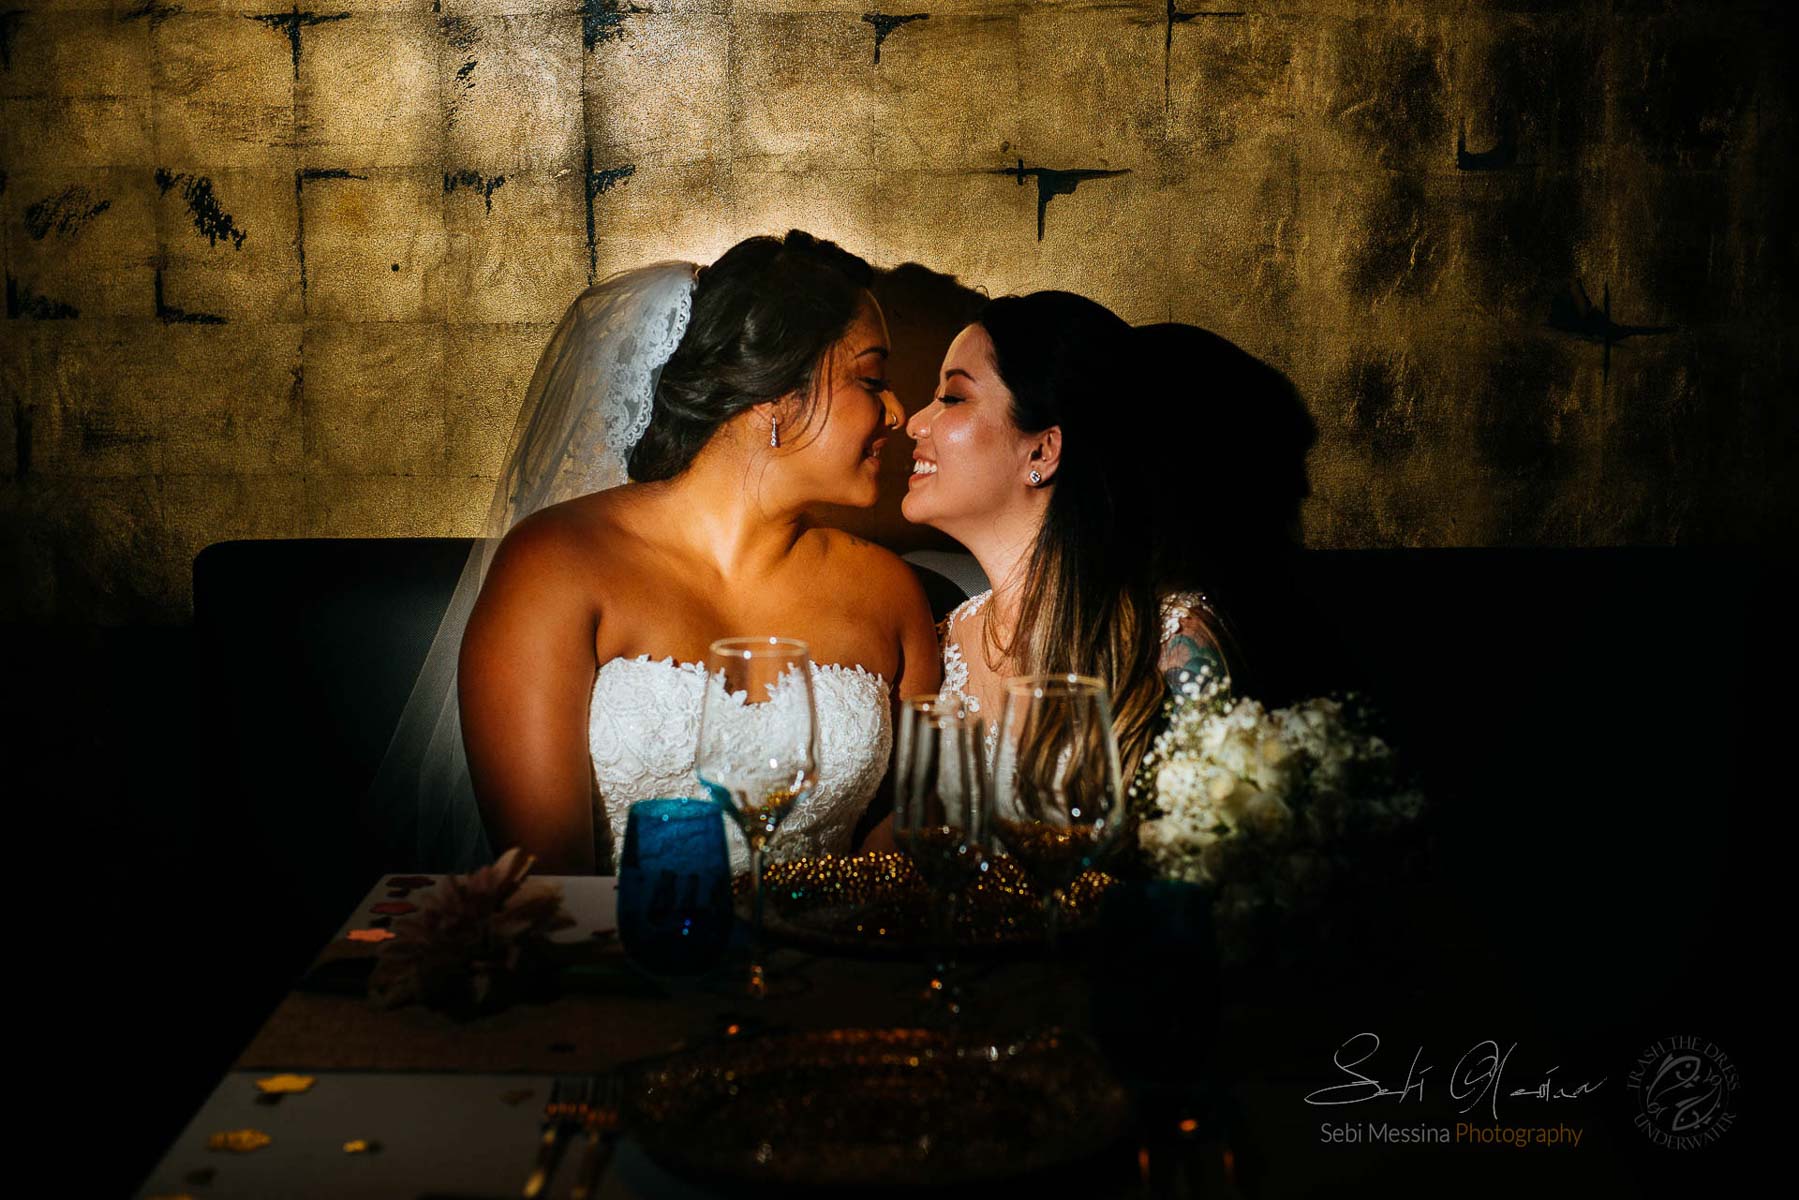 Royalton Cancun Restaurant - Same-sex wedding Mexico - Sebi Messina Photography